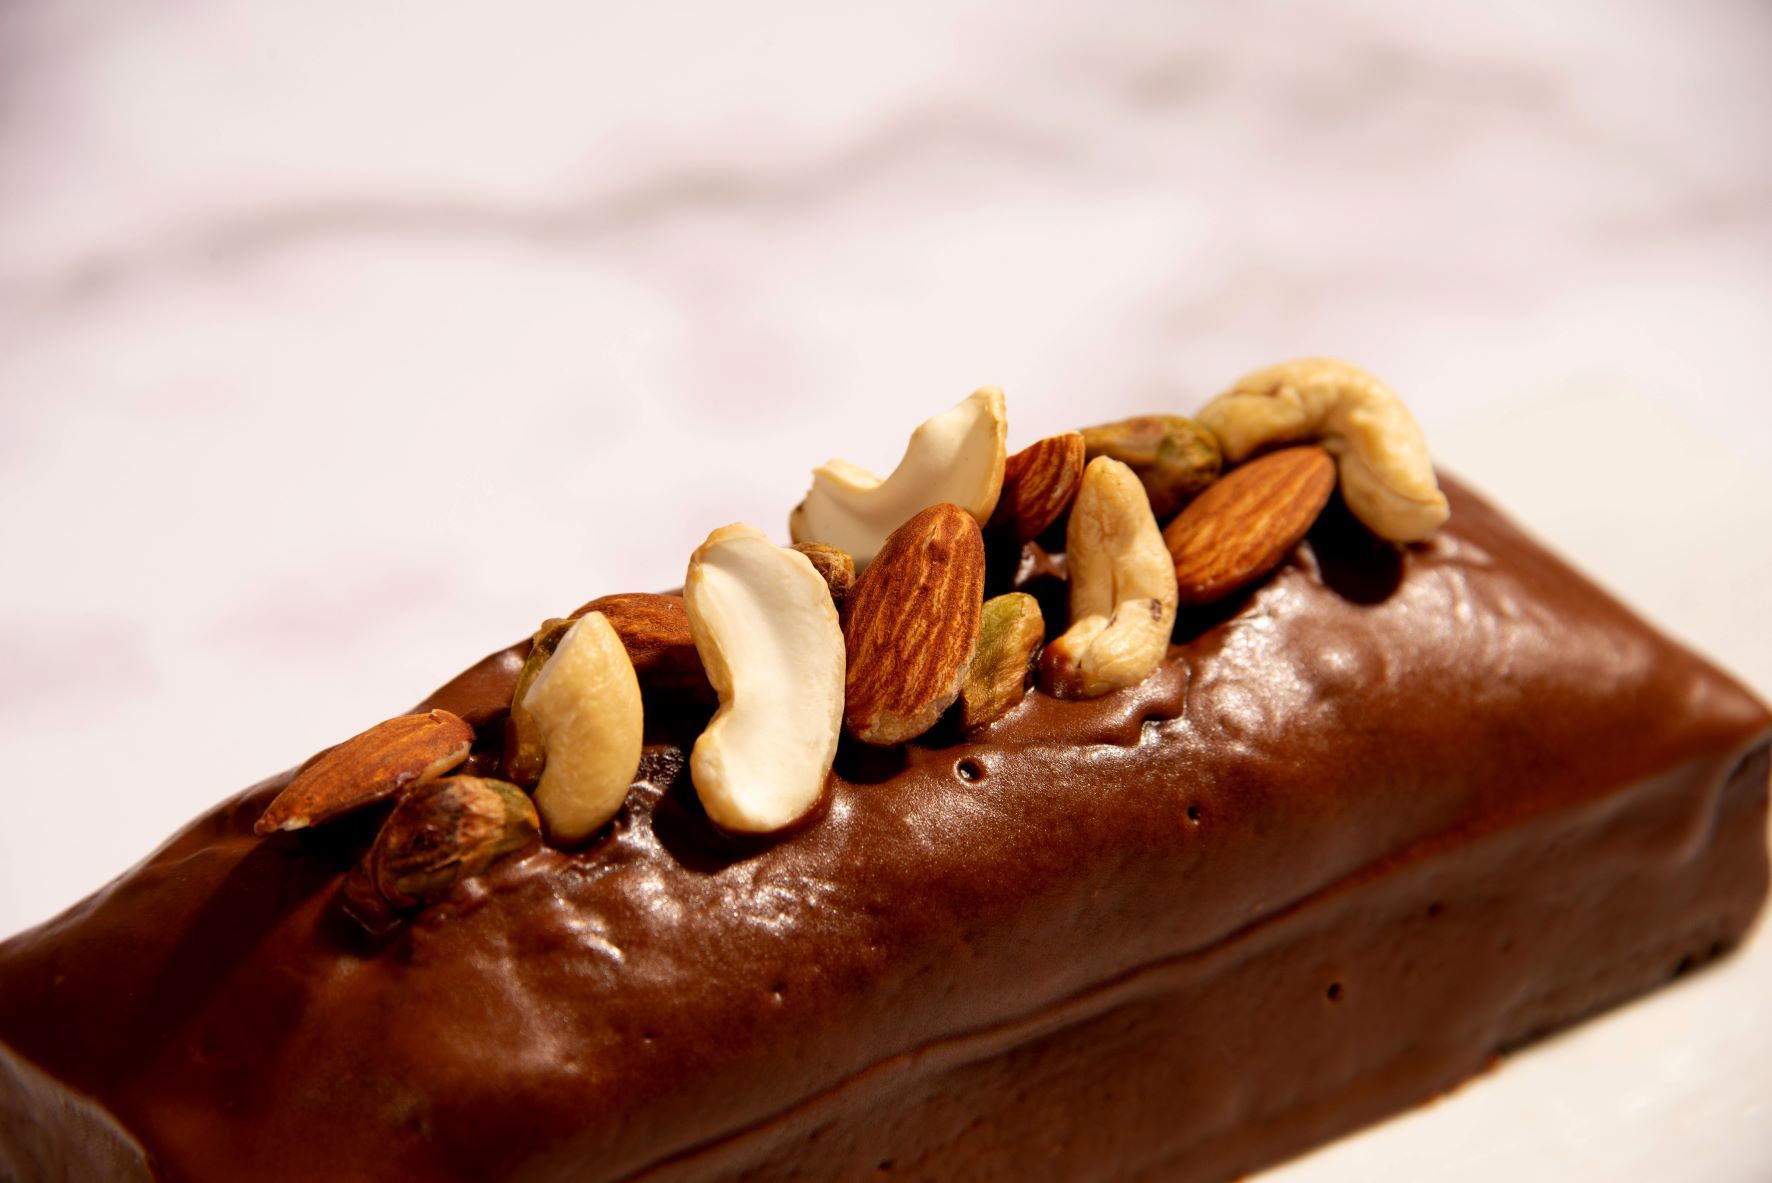 福岡のチョコレート専門店XXOCOA(ショコア)より
秋の新作スイーツ-オーガニックナッツとチョコレートの
パウンドケーキ-「アマンドカトルカール」発売開始